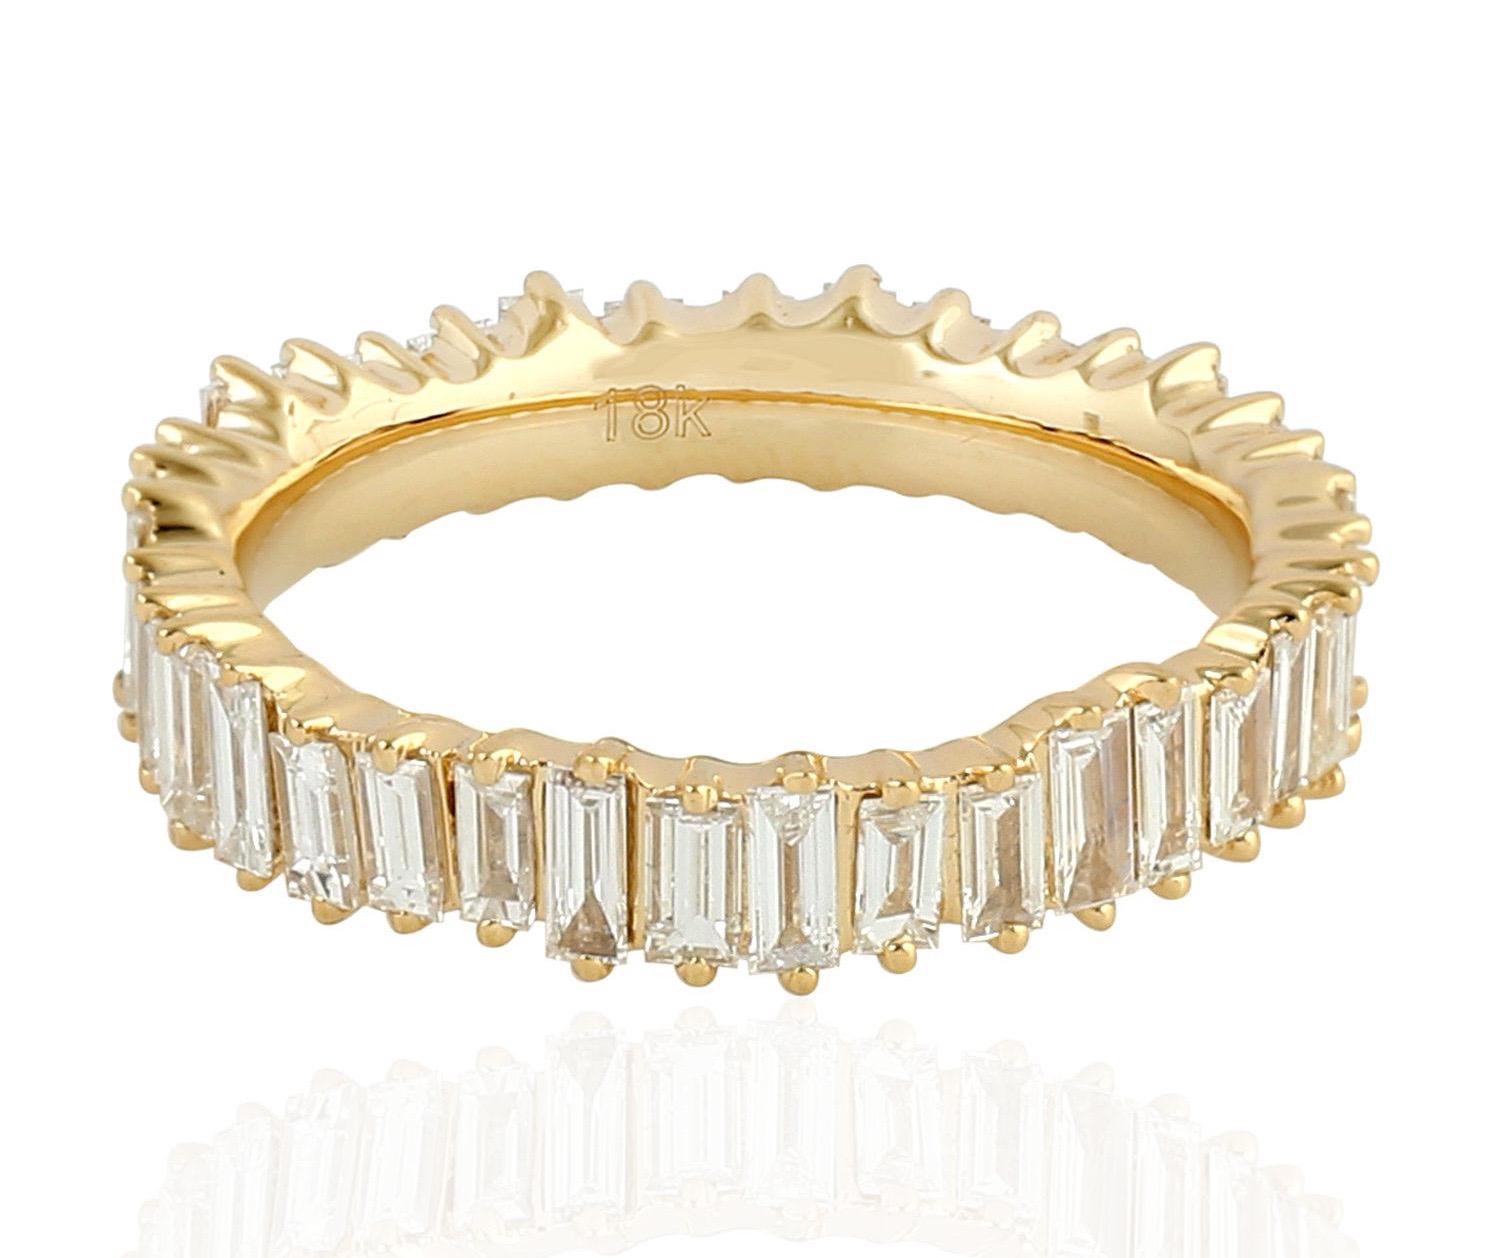 Dieser Ring wurde sorgfältig aus 18 Karat Gold und 1,82 Karat Baguette-Diamanten gefertigt. Auch in Roségold erhältlich.

Der Ring hat die Größe 6,5 und kann auf Anfrage größer oder kleiner gemacht werden. 
FOLGEN  MEGHNA JEWELS Storefront, um die